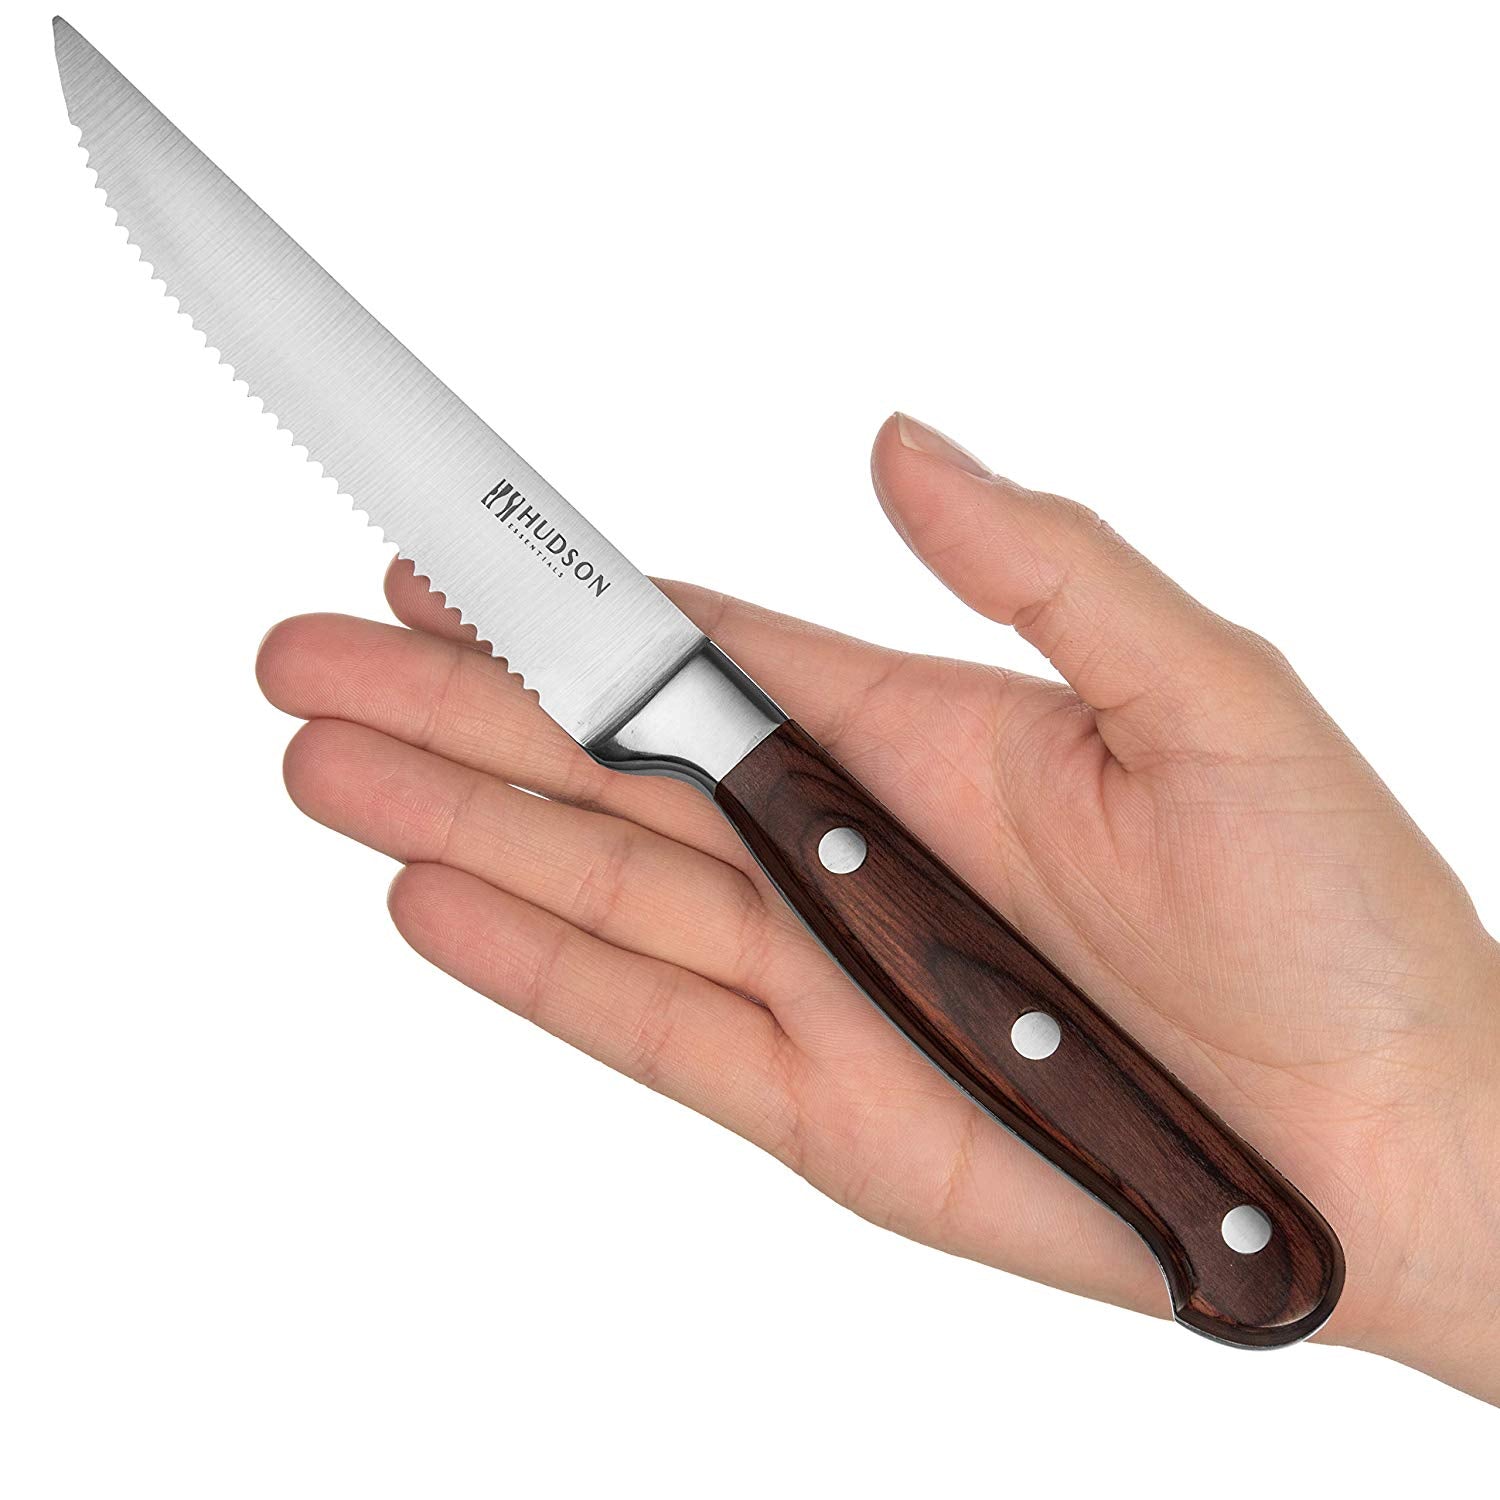 Pakka Wood German Steel Blade Knife Set